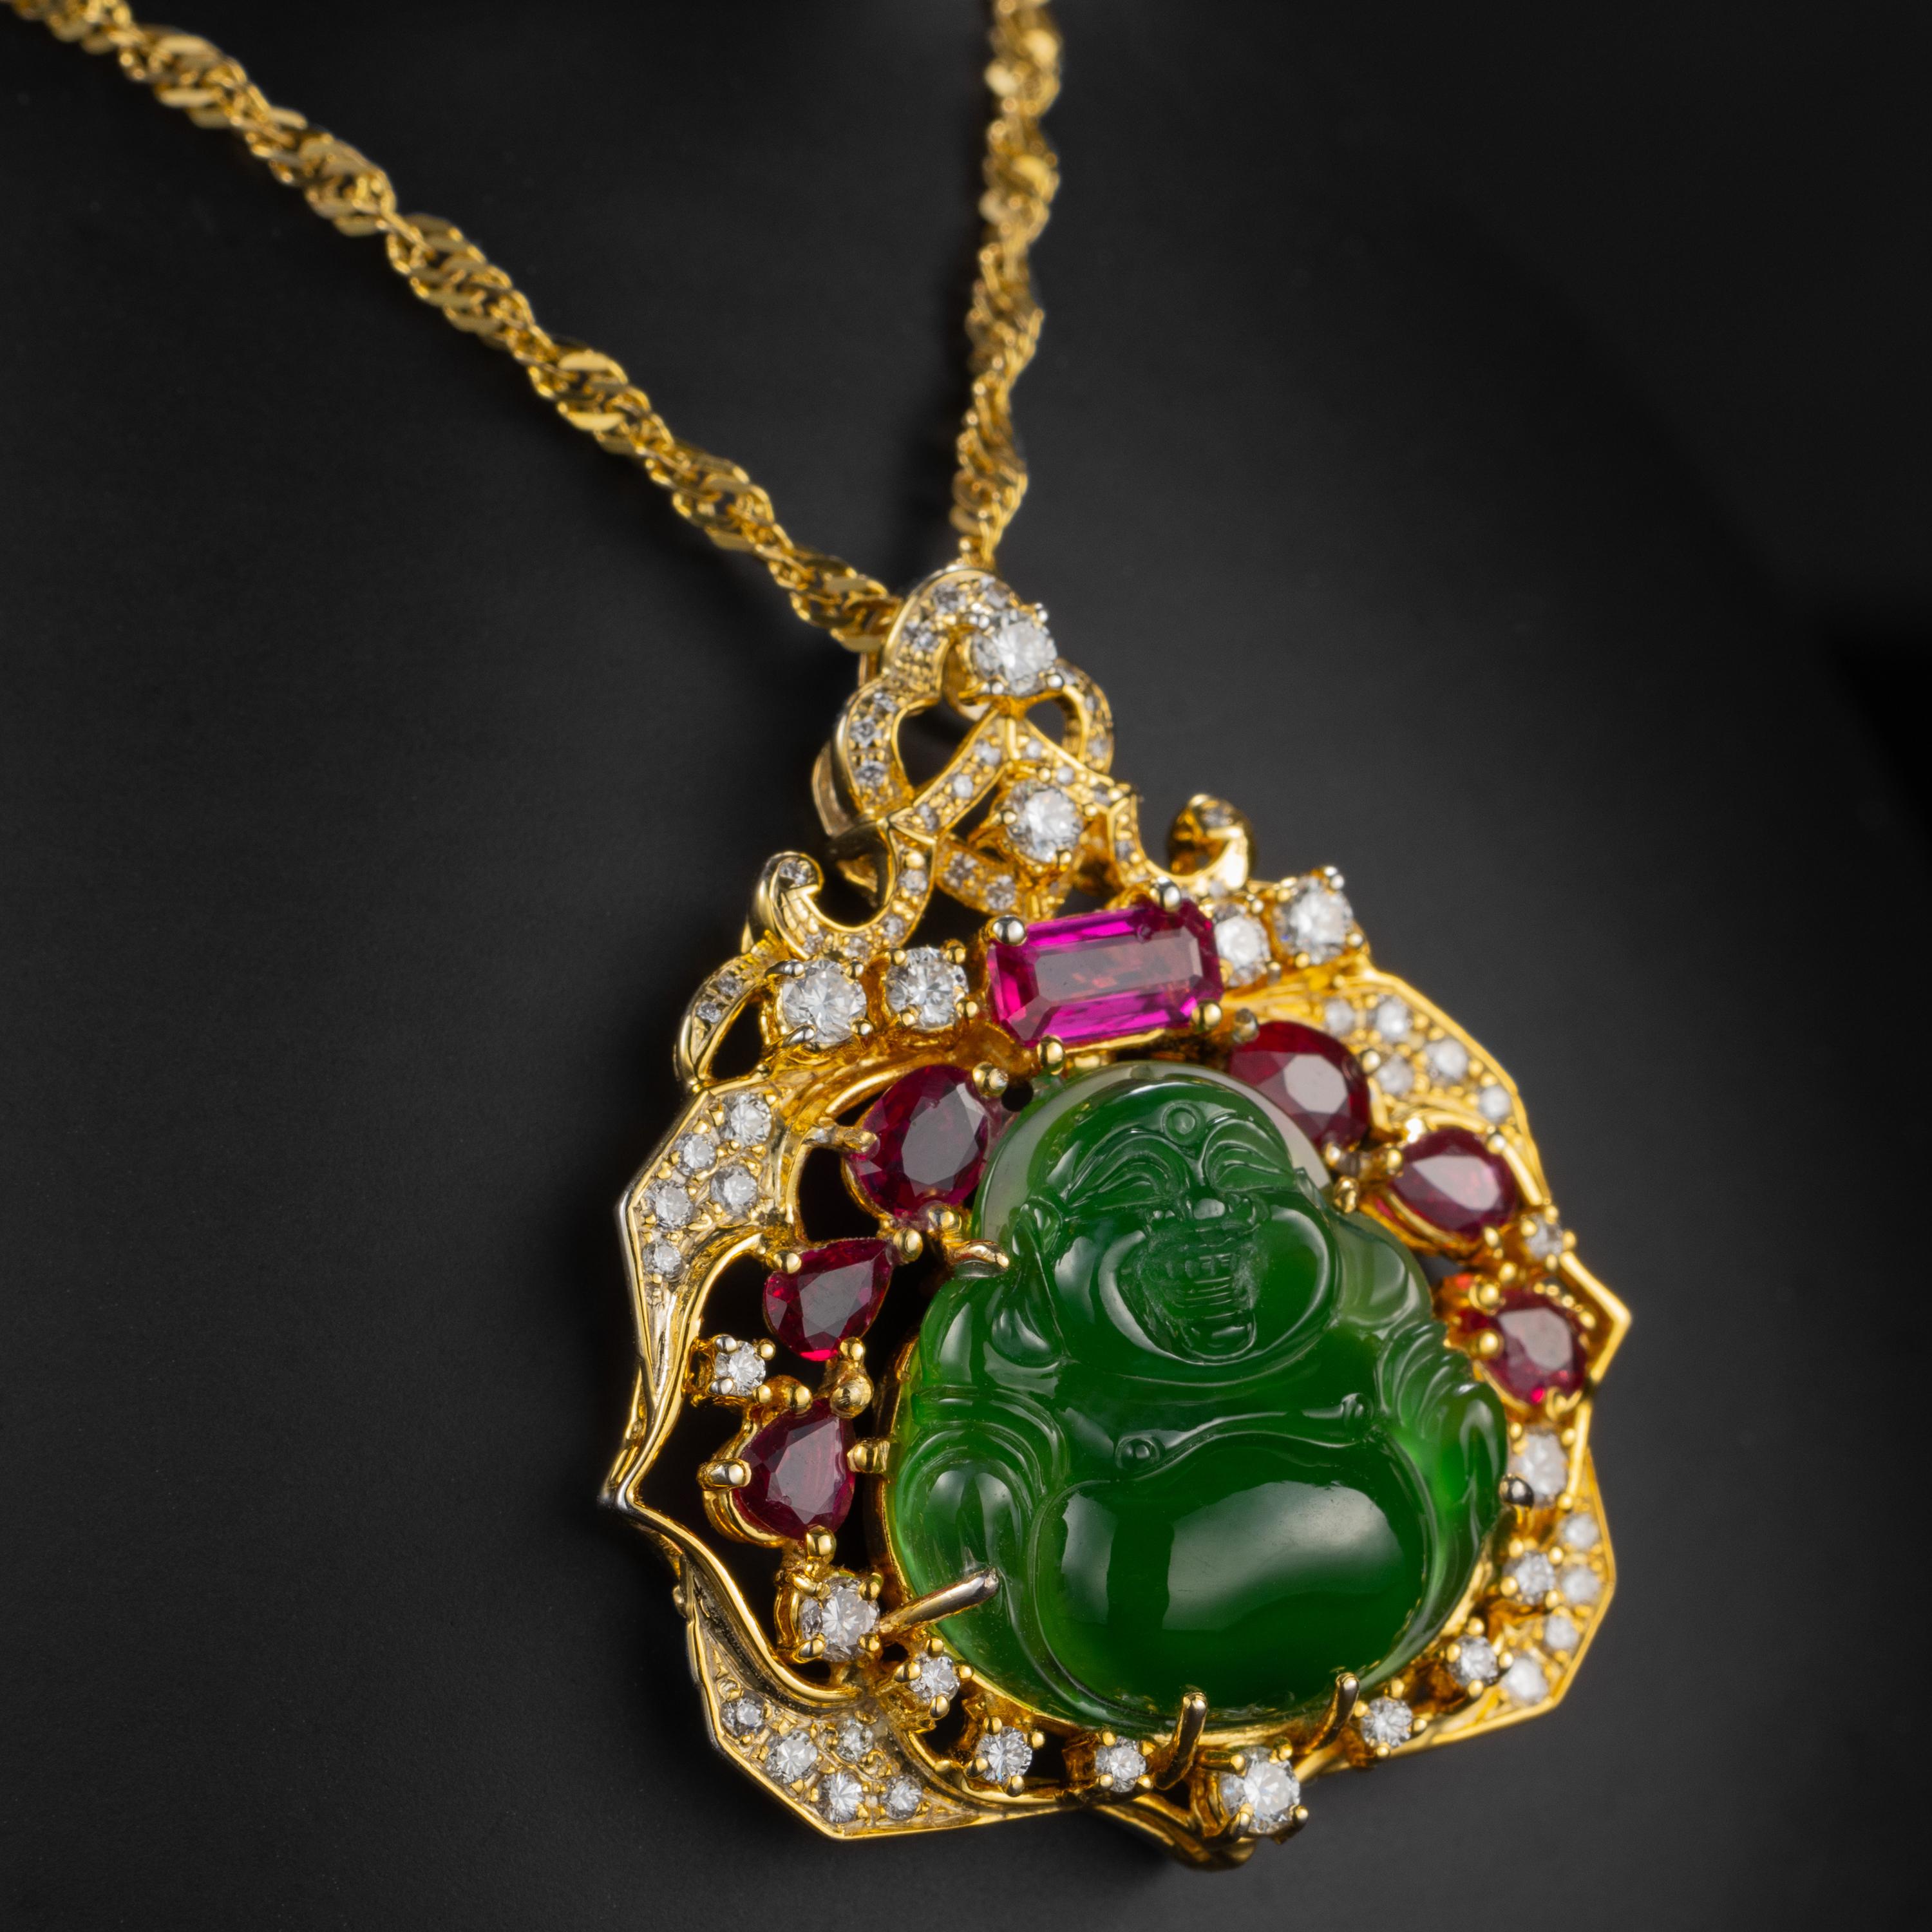 Artisan Jade Buddha Pendant with Diamonds, Rubies Certified Untreated Jade